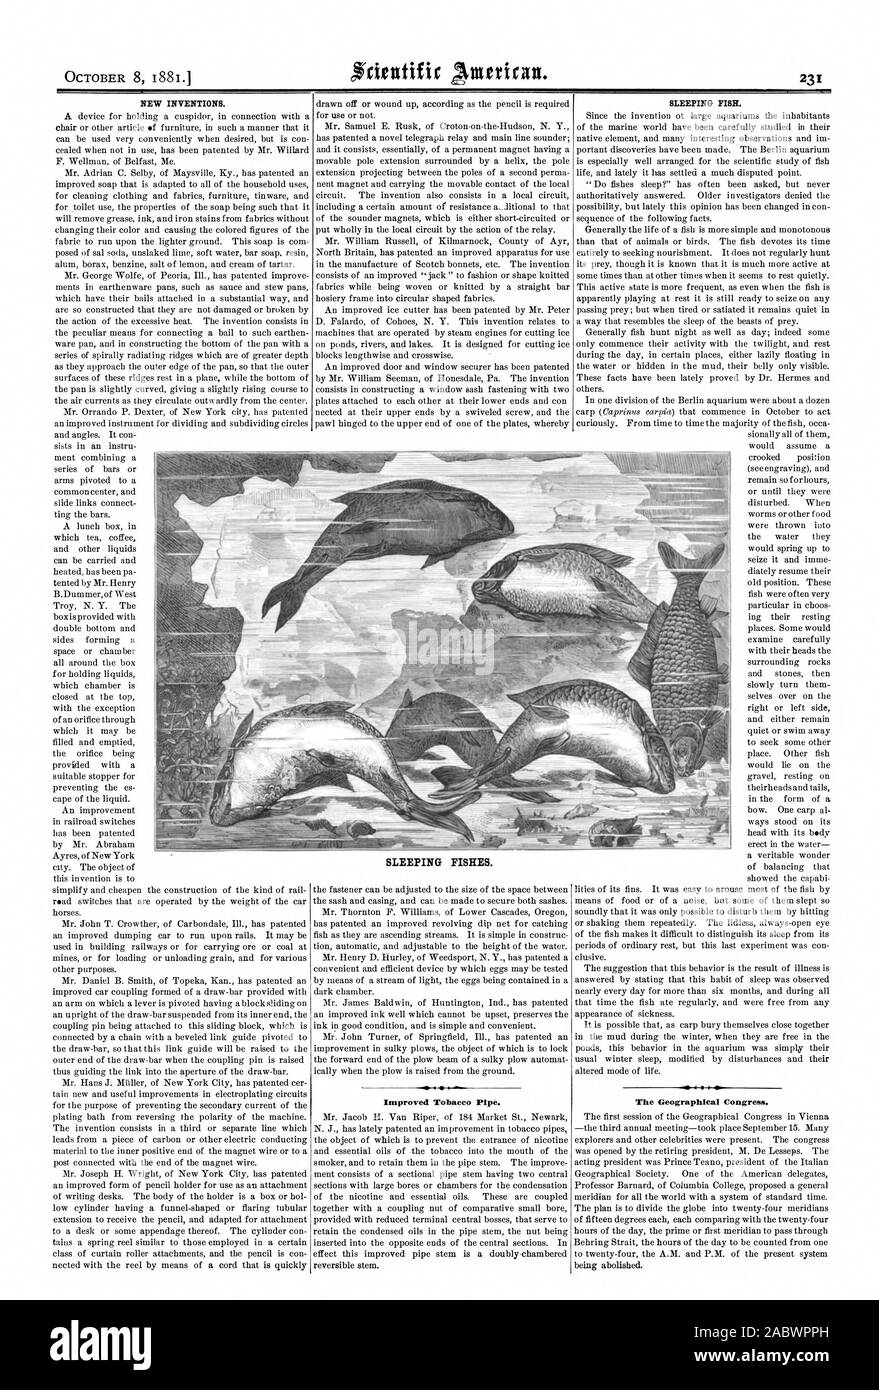 Neue Erfindungen. Verbesserte Tabakpfeife. Schlafende Fische. Die geographische Kongress. Schlafende FISCHE., Scientific American, 1881-10-08 Stockfoto